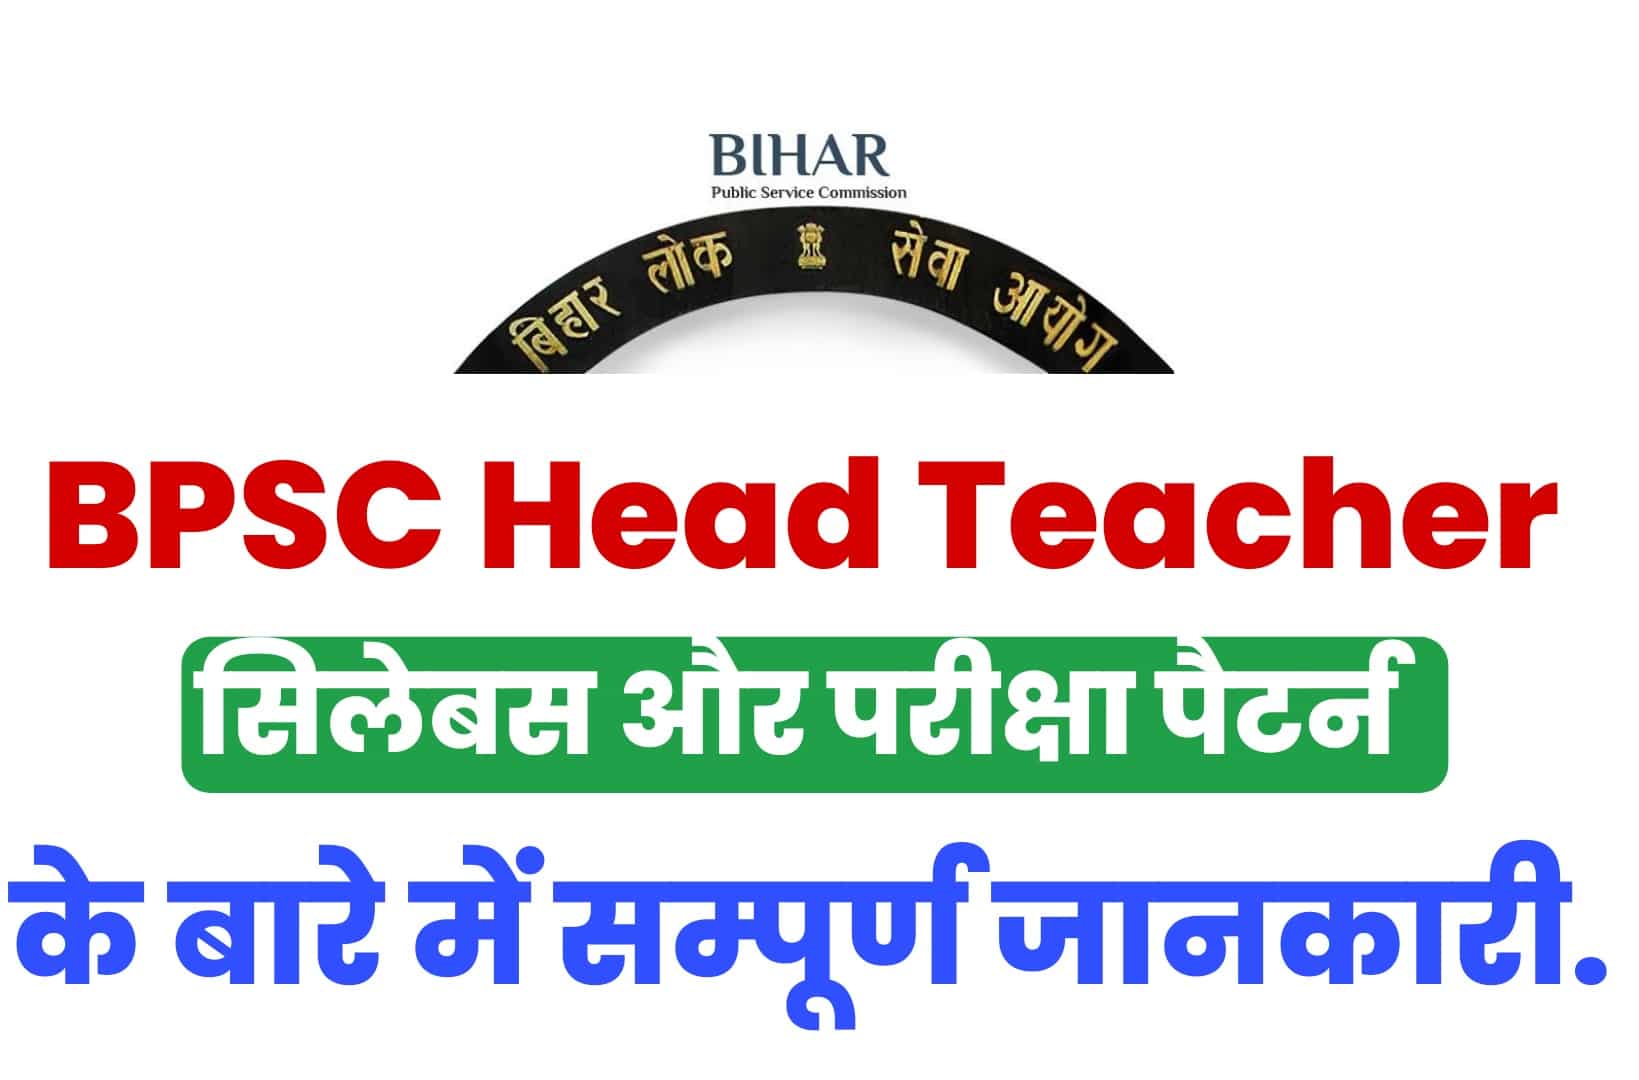 BPSC Head Teacher Syllabus 2022 In Hindi | बिहार प्रधान शिक्षक सिलेबस हिंदी में